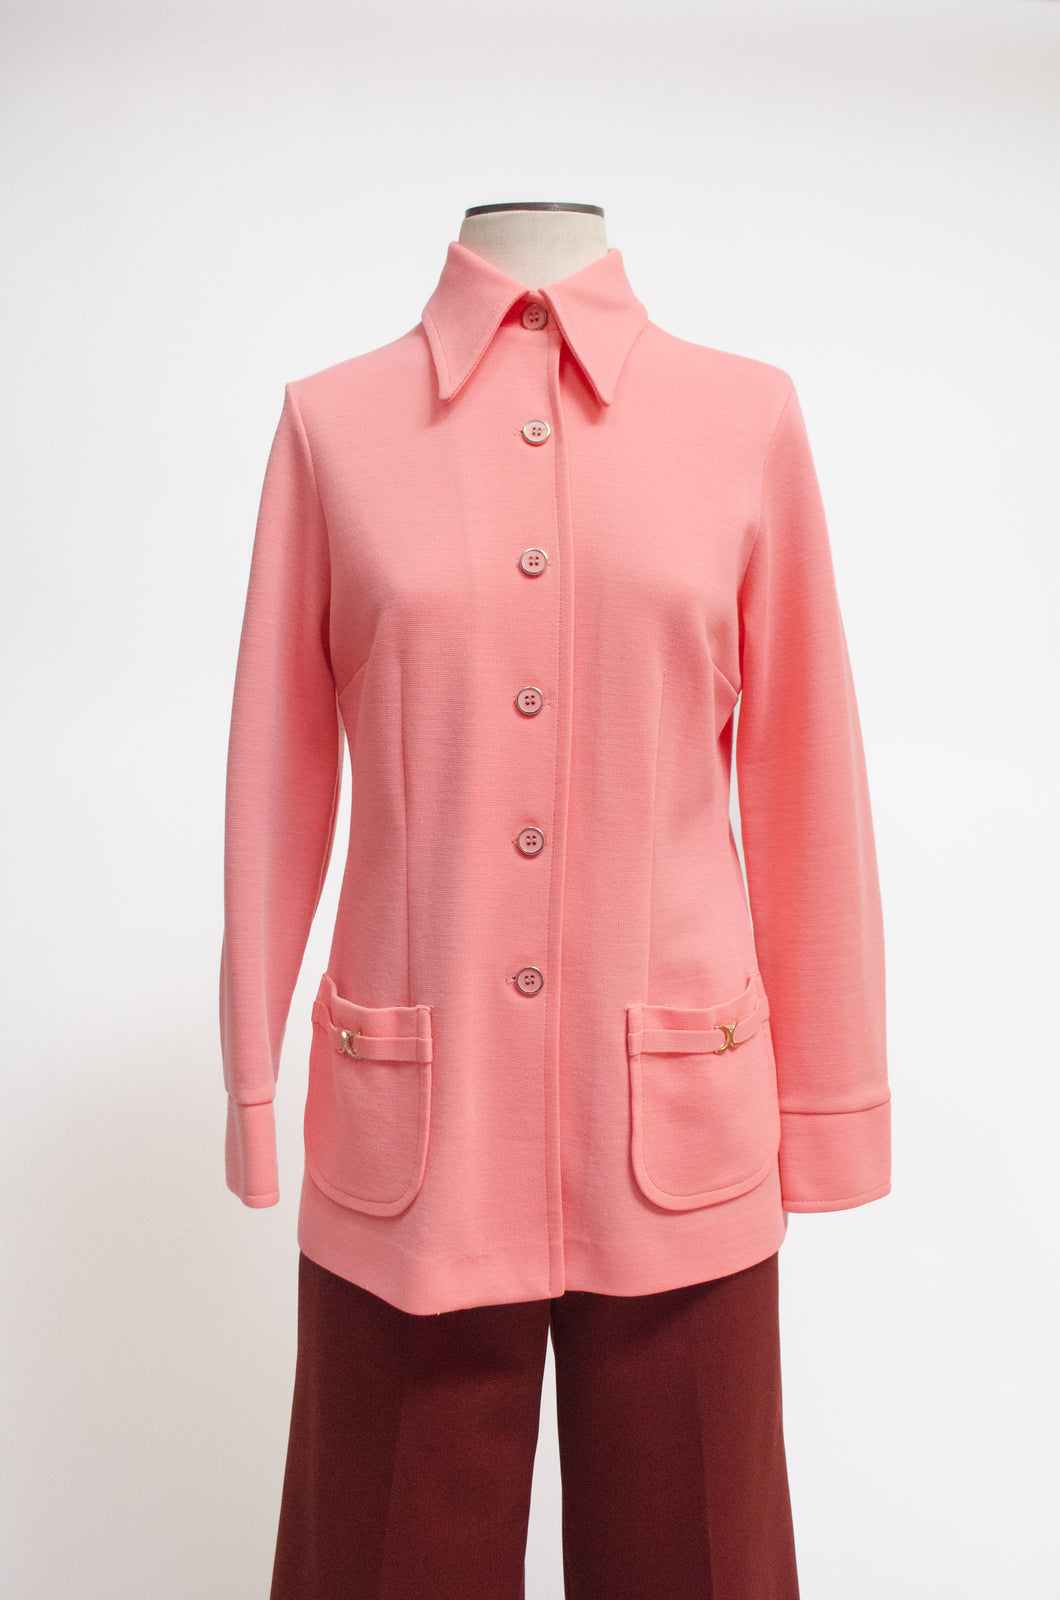 Bubble gum pink 70s leisure suit jacket